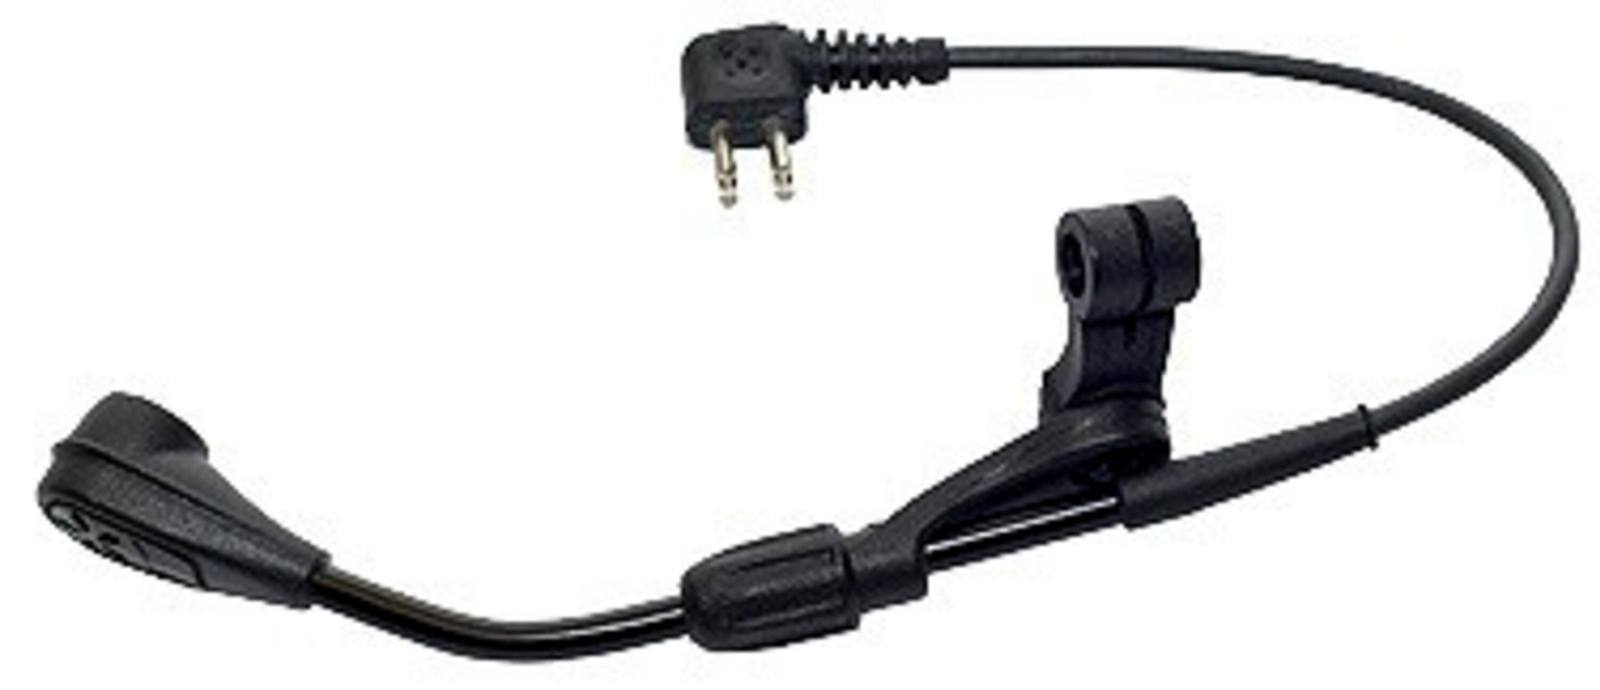 3M PELTOR Elektret-Bügelmikrofon MT53N-14/1, mit Stecker, 240 mm, inkl. Windschutz, M995/2